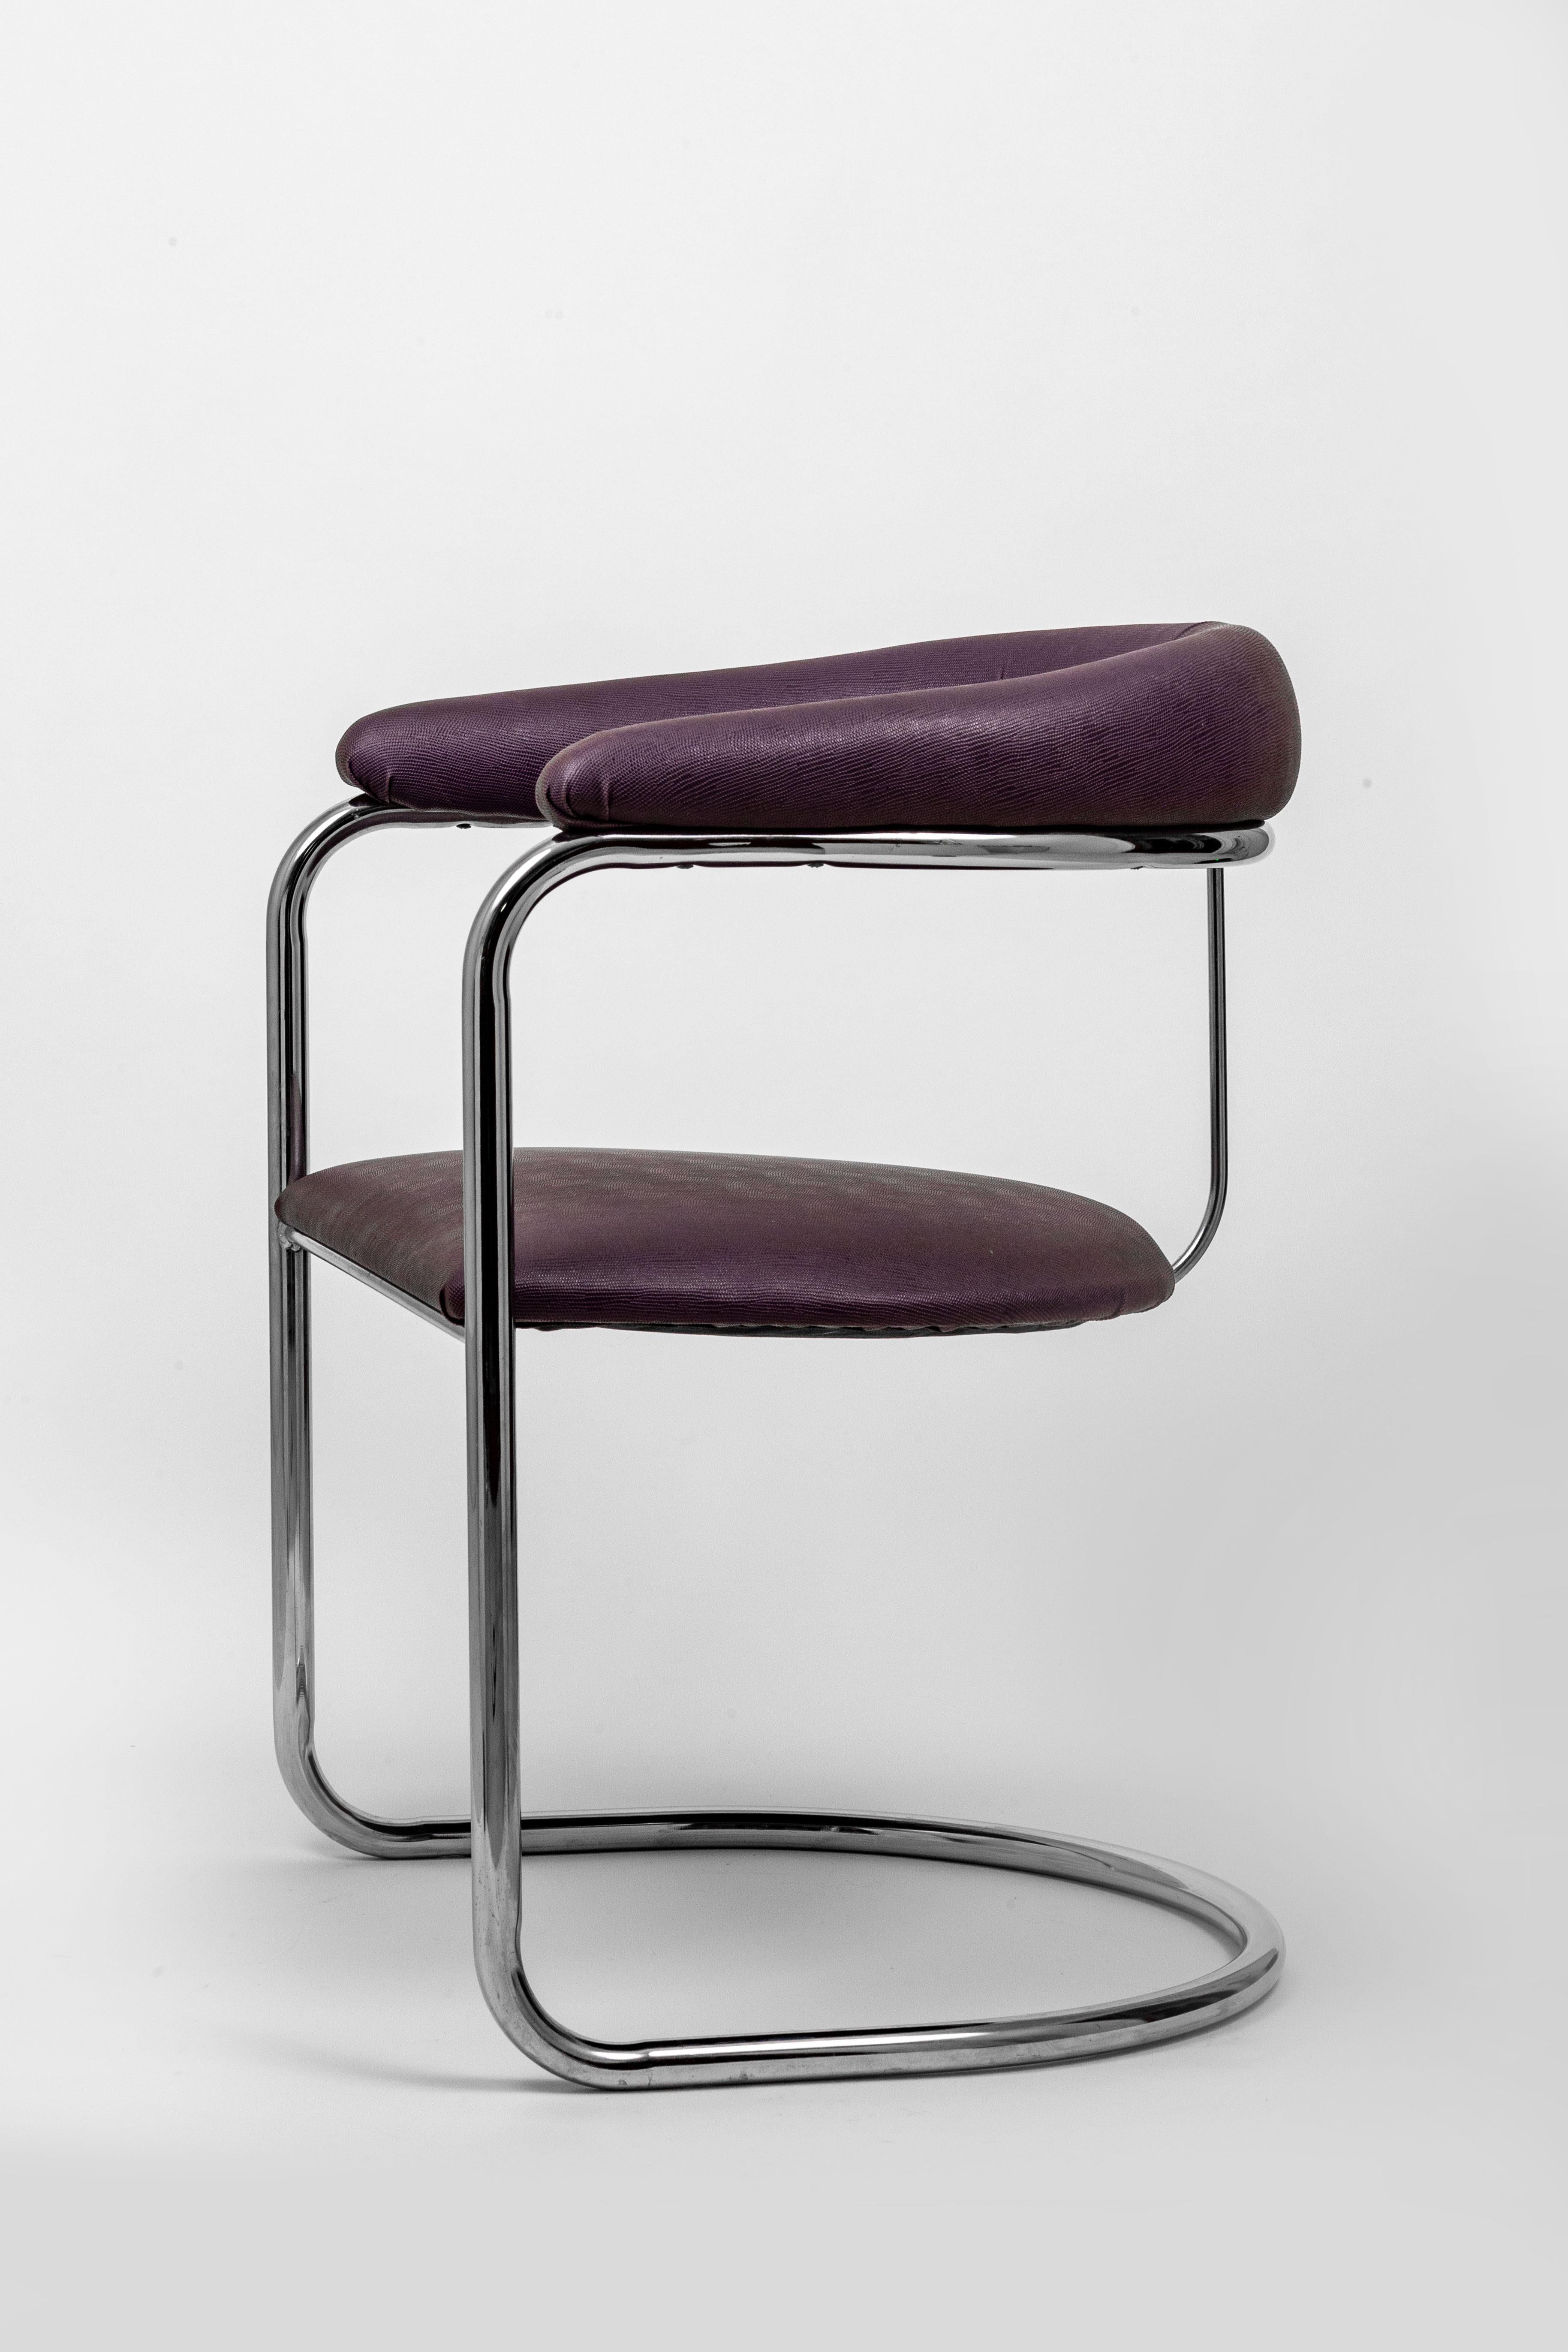 Ein Paar freitragender Sessel, entworfen von Anton Lorenz und hergestellt von Thonet. Der Preis gilt für ein Paar und es sind 2 Paare verfügbar. Die verchromten Rohrrahmen sind schön und hell. Die Reptilienimitat-Polsterung in der Farbe eines